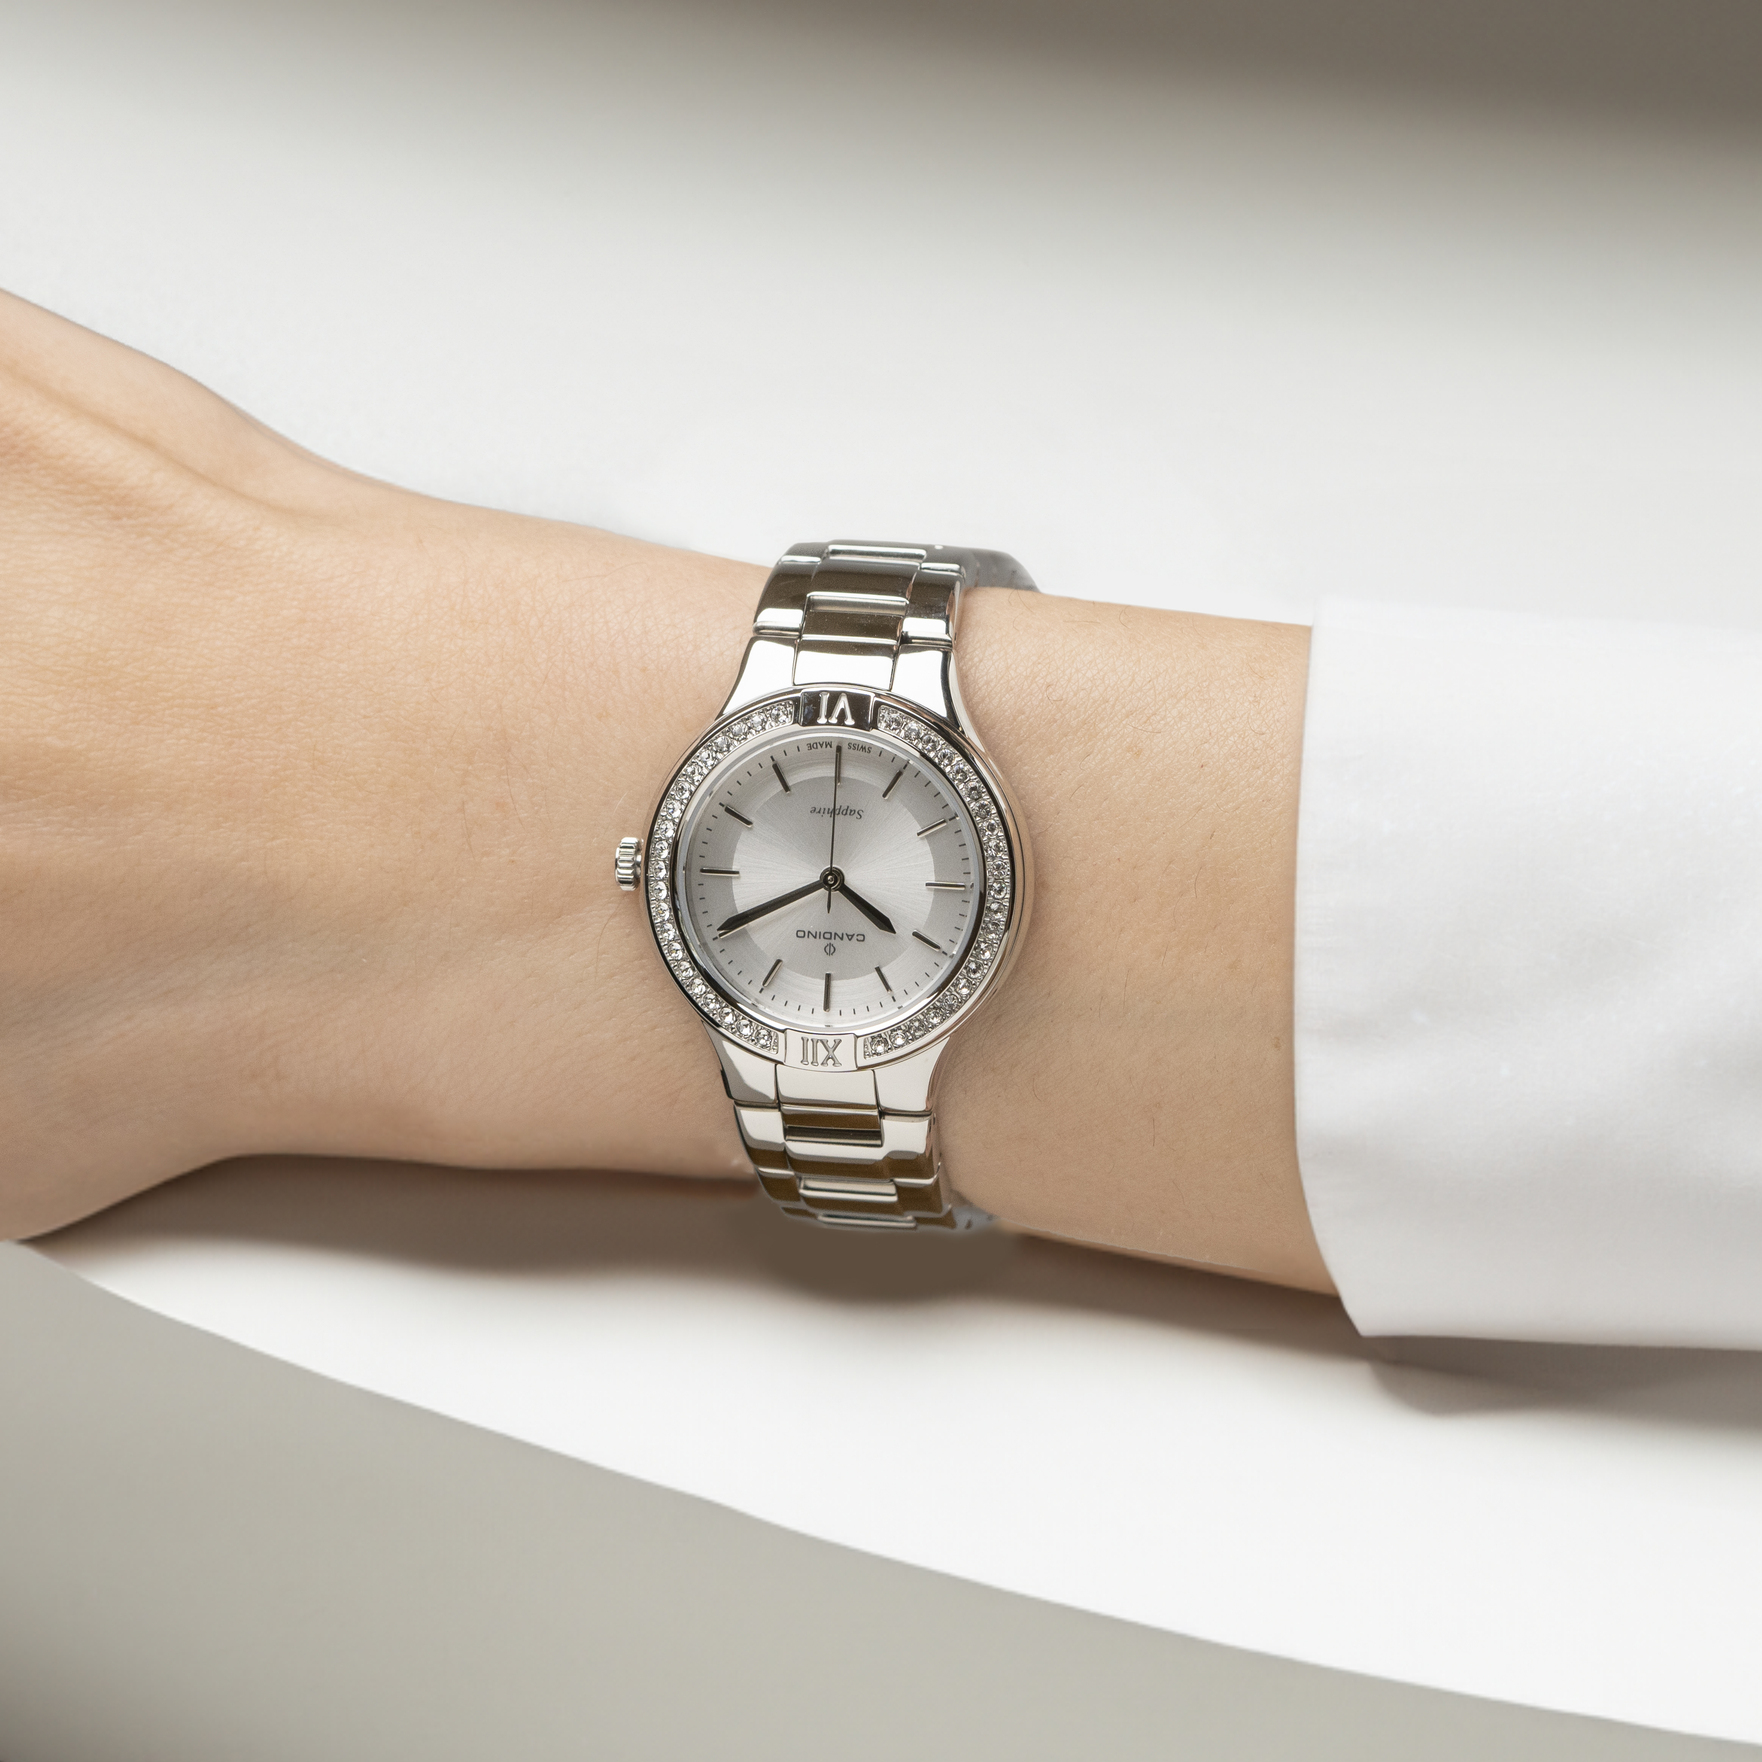 Reloj Suizo CANDINO para mujer, colección LADY PETITE color Blanco C4626/1